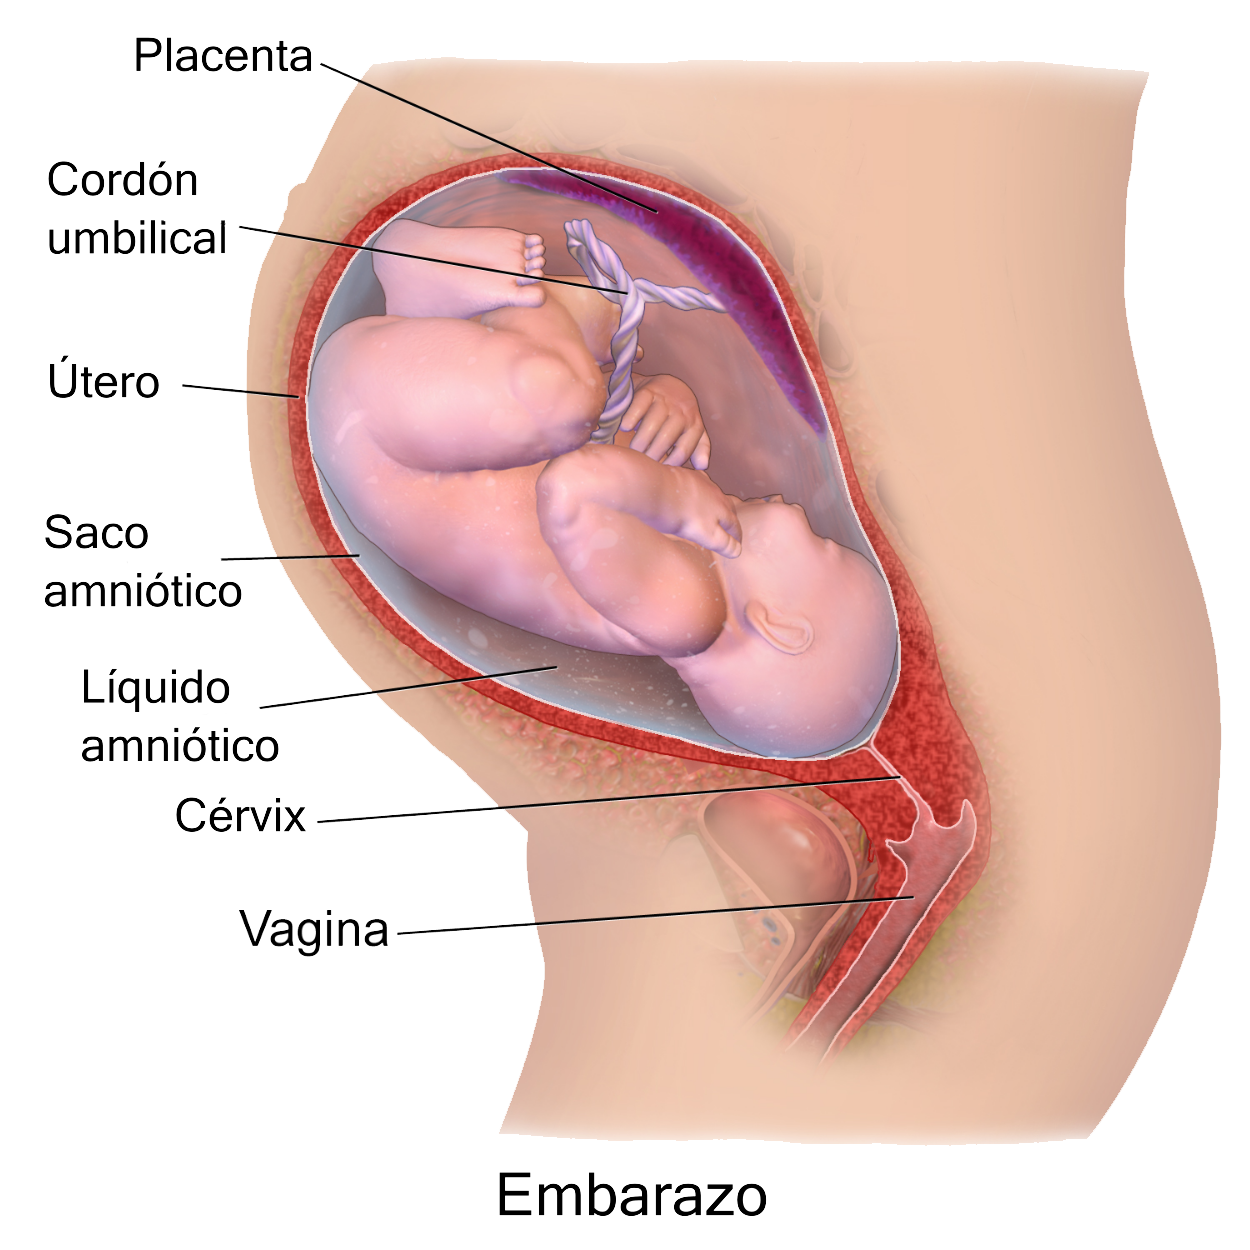 When Do Sex Organs Develop In Pregnancy 87